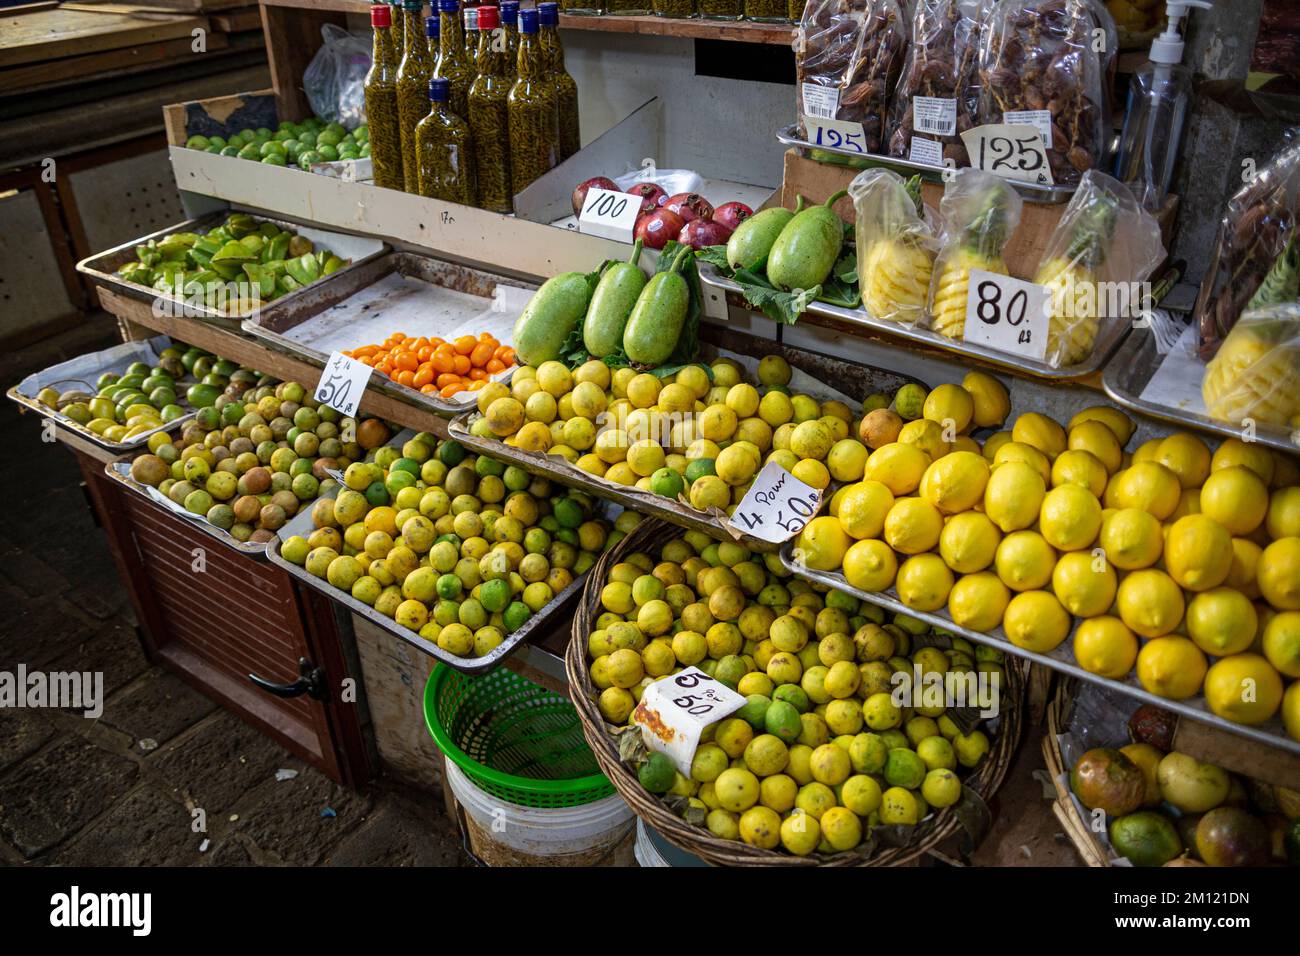 Mercato centrale dell'isola di Mauritius, Africa: Questo vivace mercato all'aperto offre una varietà di prodotti in vendita, tra cui frutta, erbe aromatiche, spezie e pozioni. Foto Stock